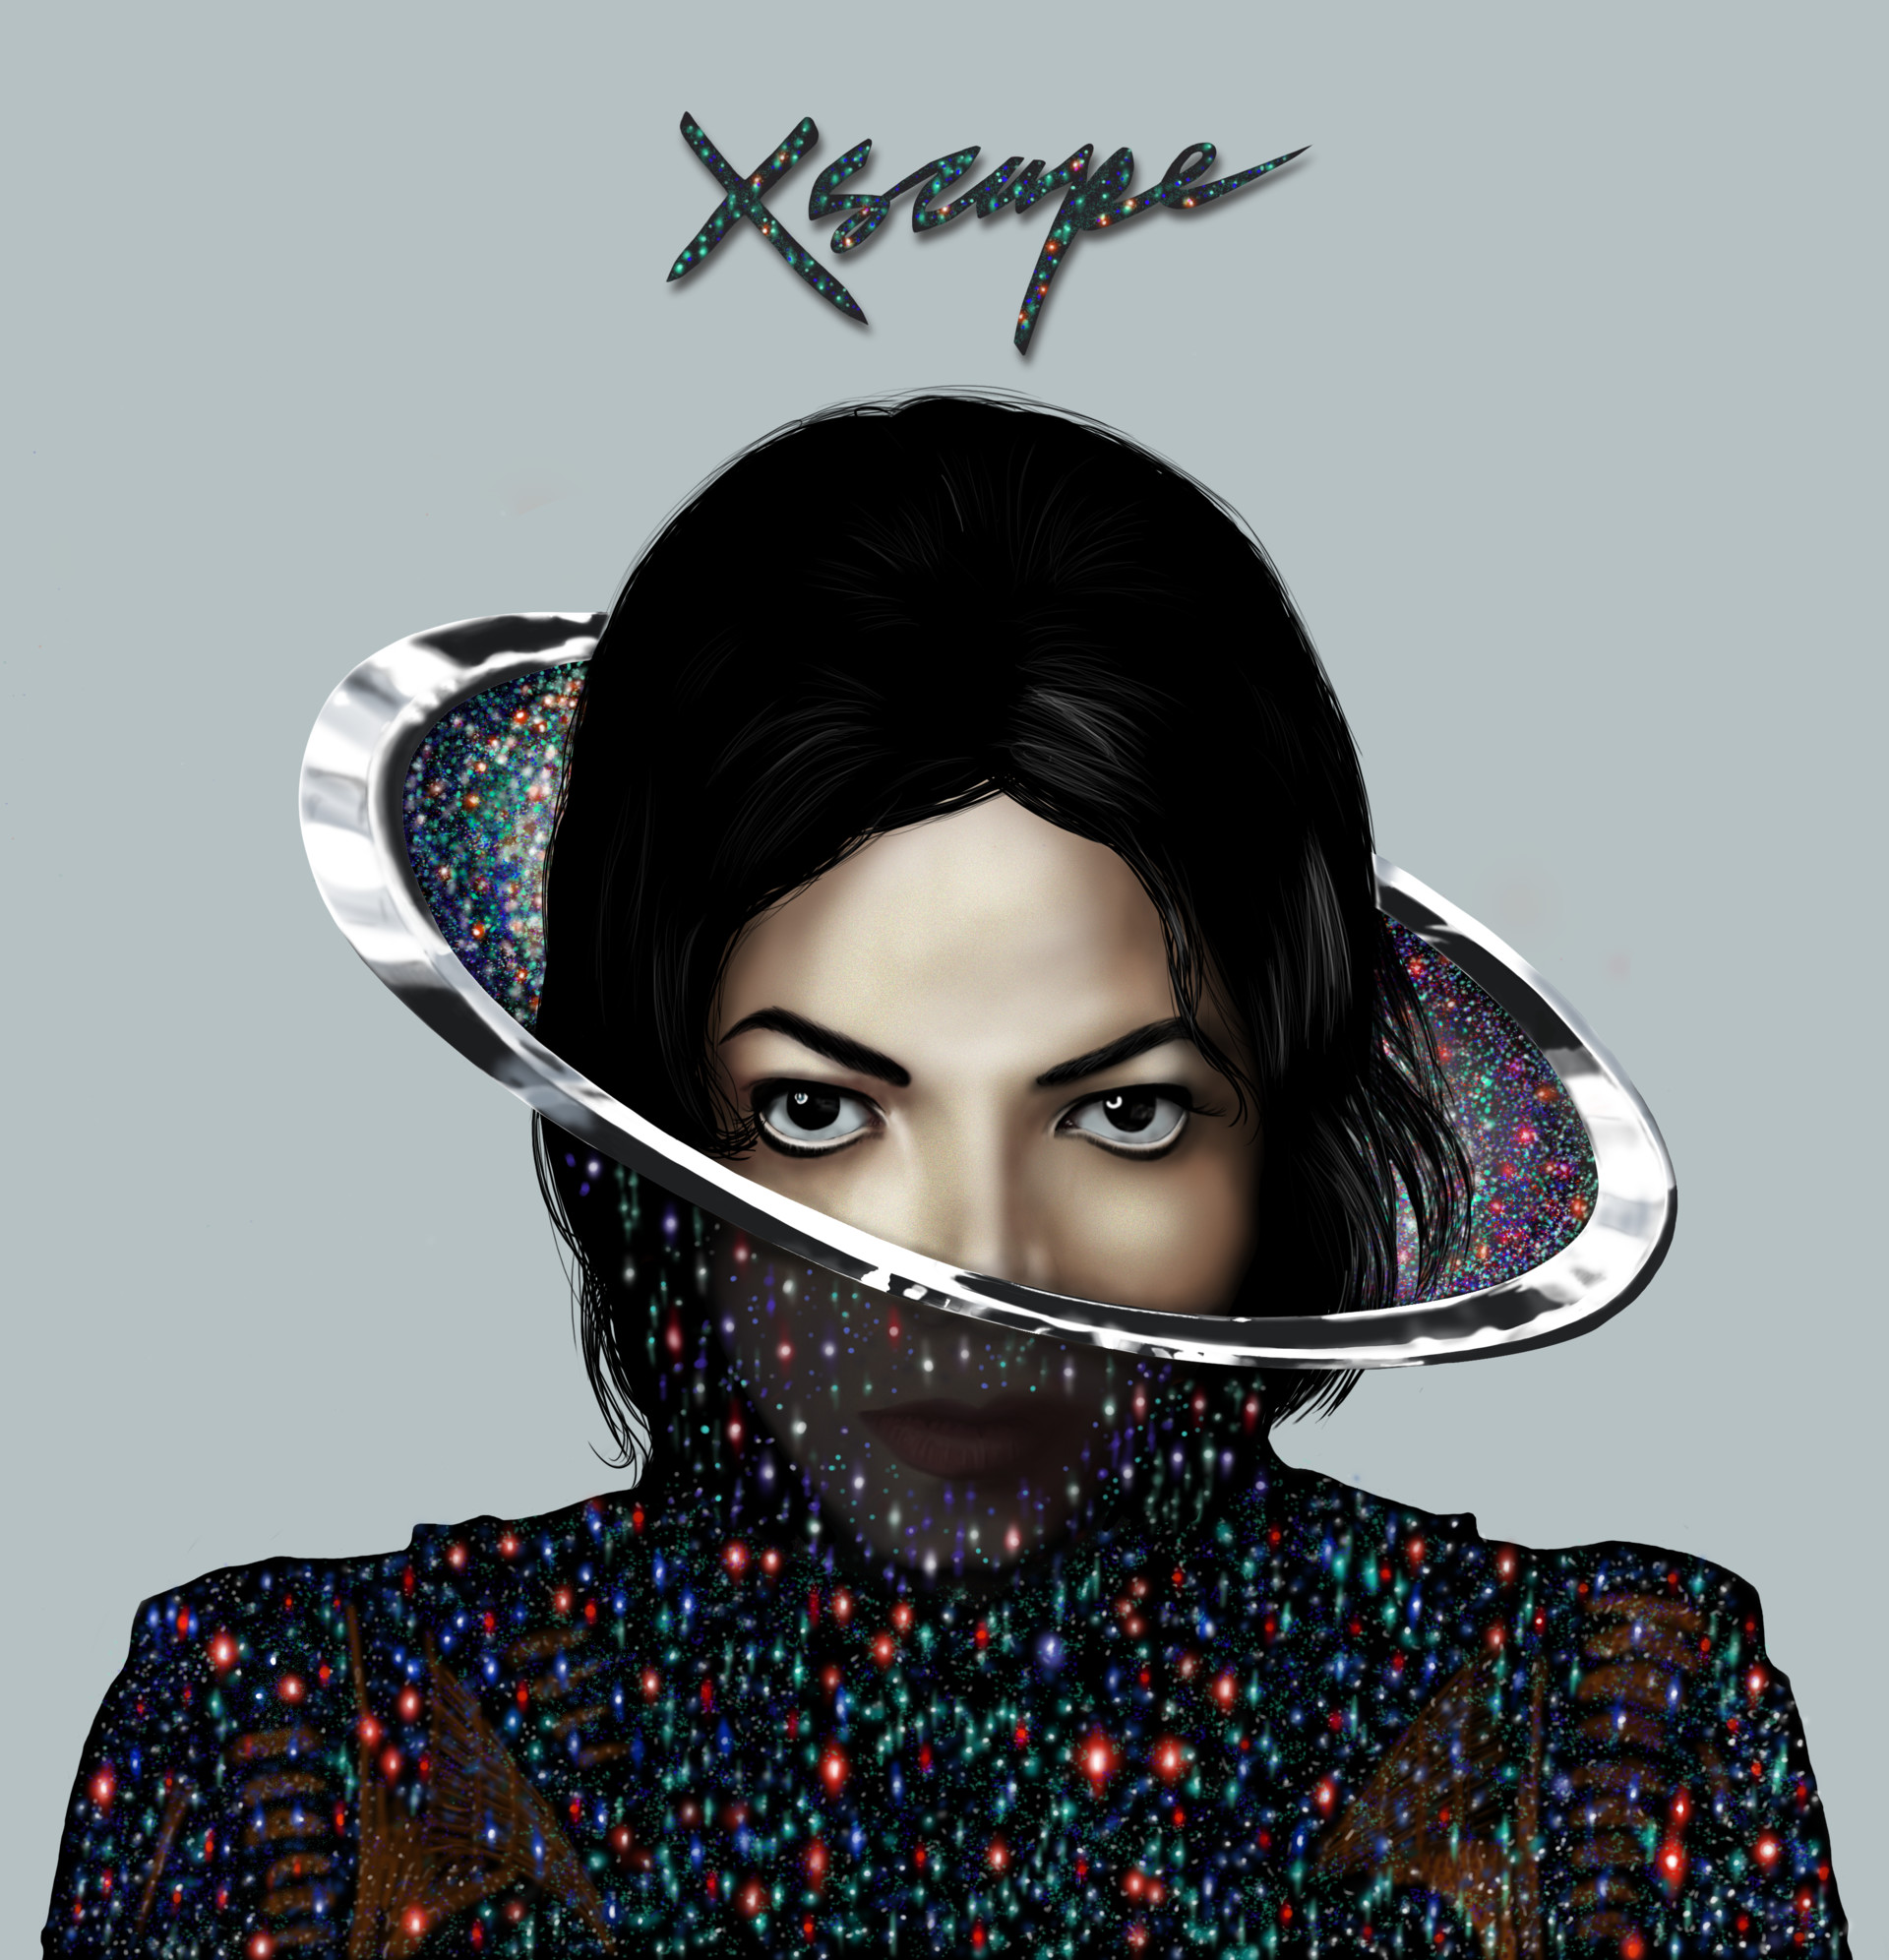 Michael Jackson Xscape.